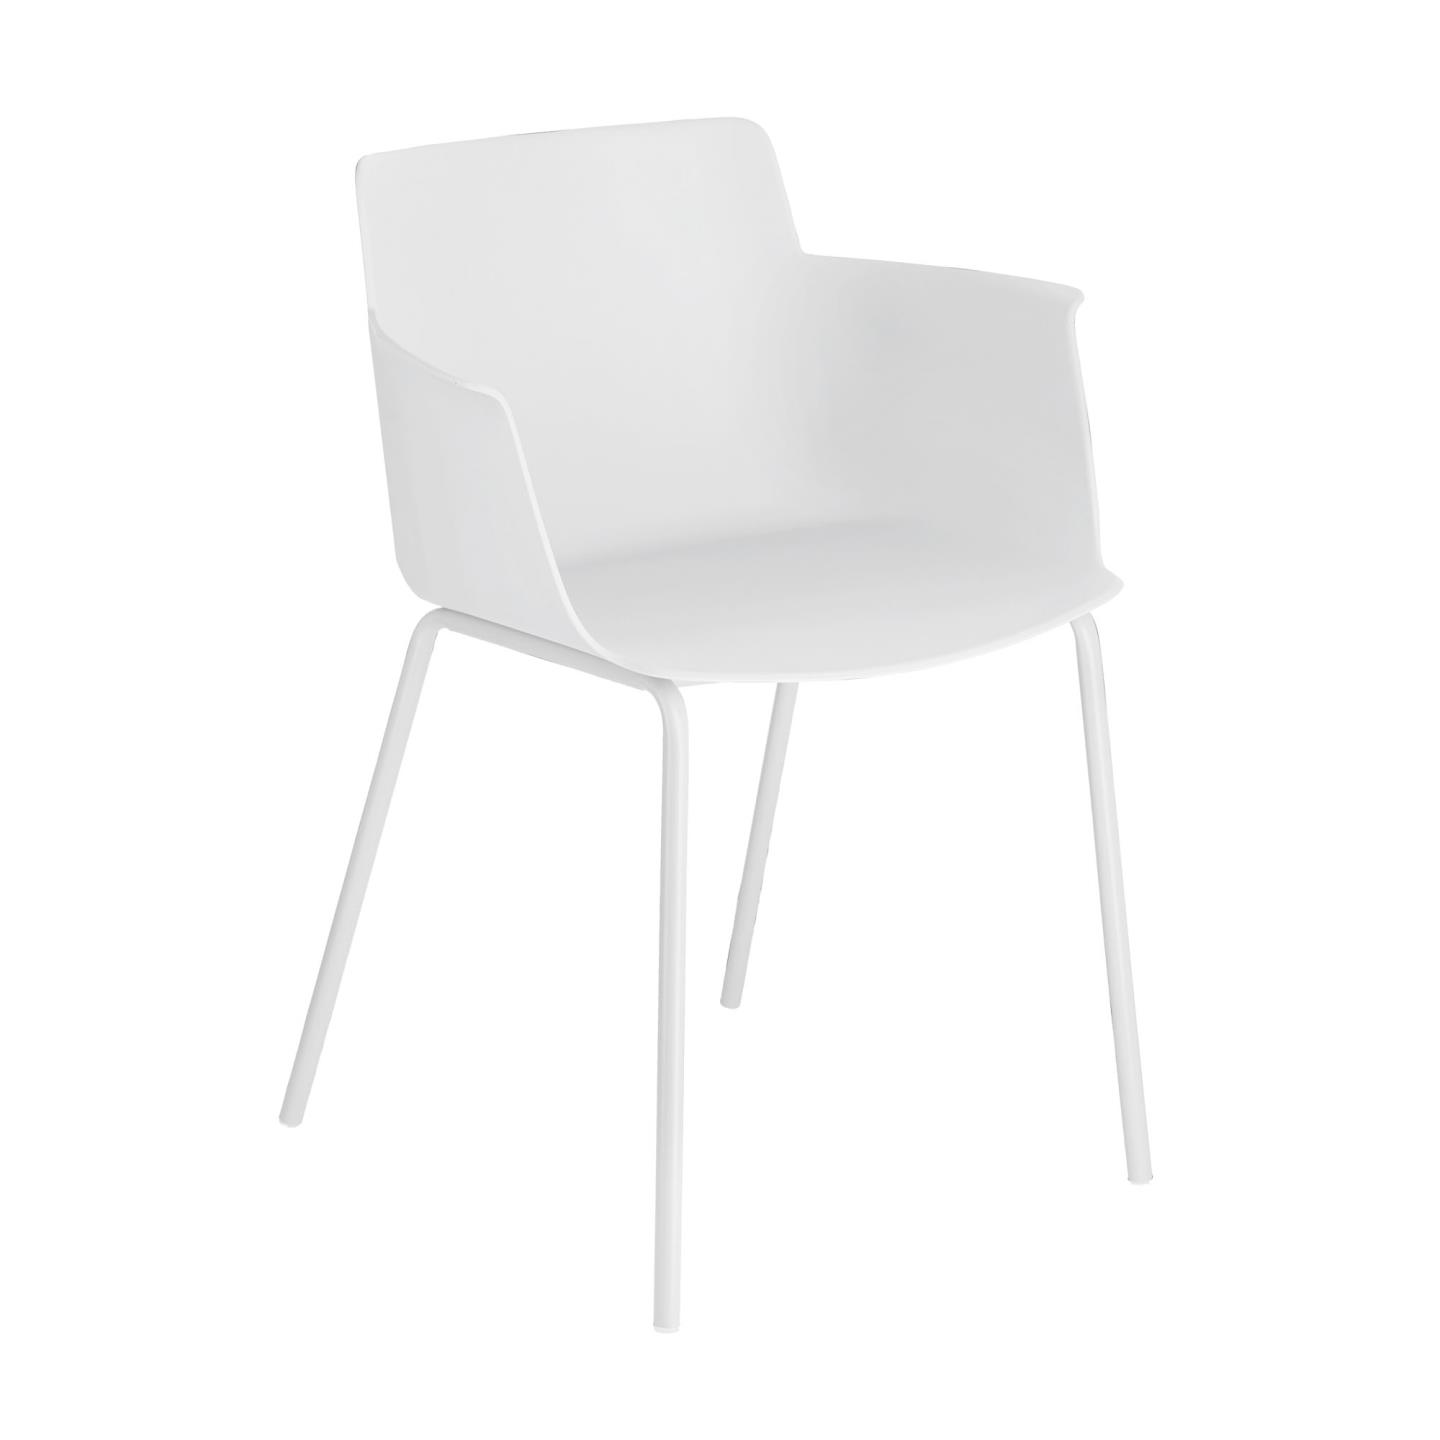 LAFORMA Hannia spisebordsstol, m. armlæn - hvid polypropylen og hvid stål